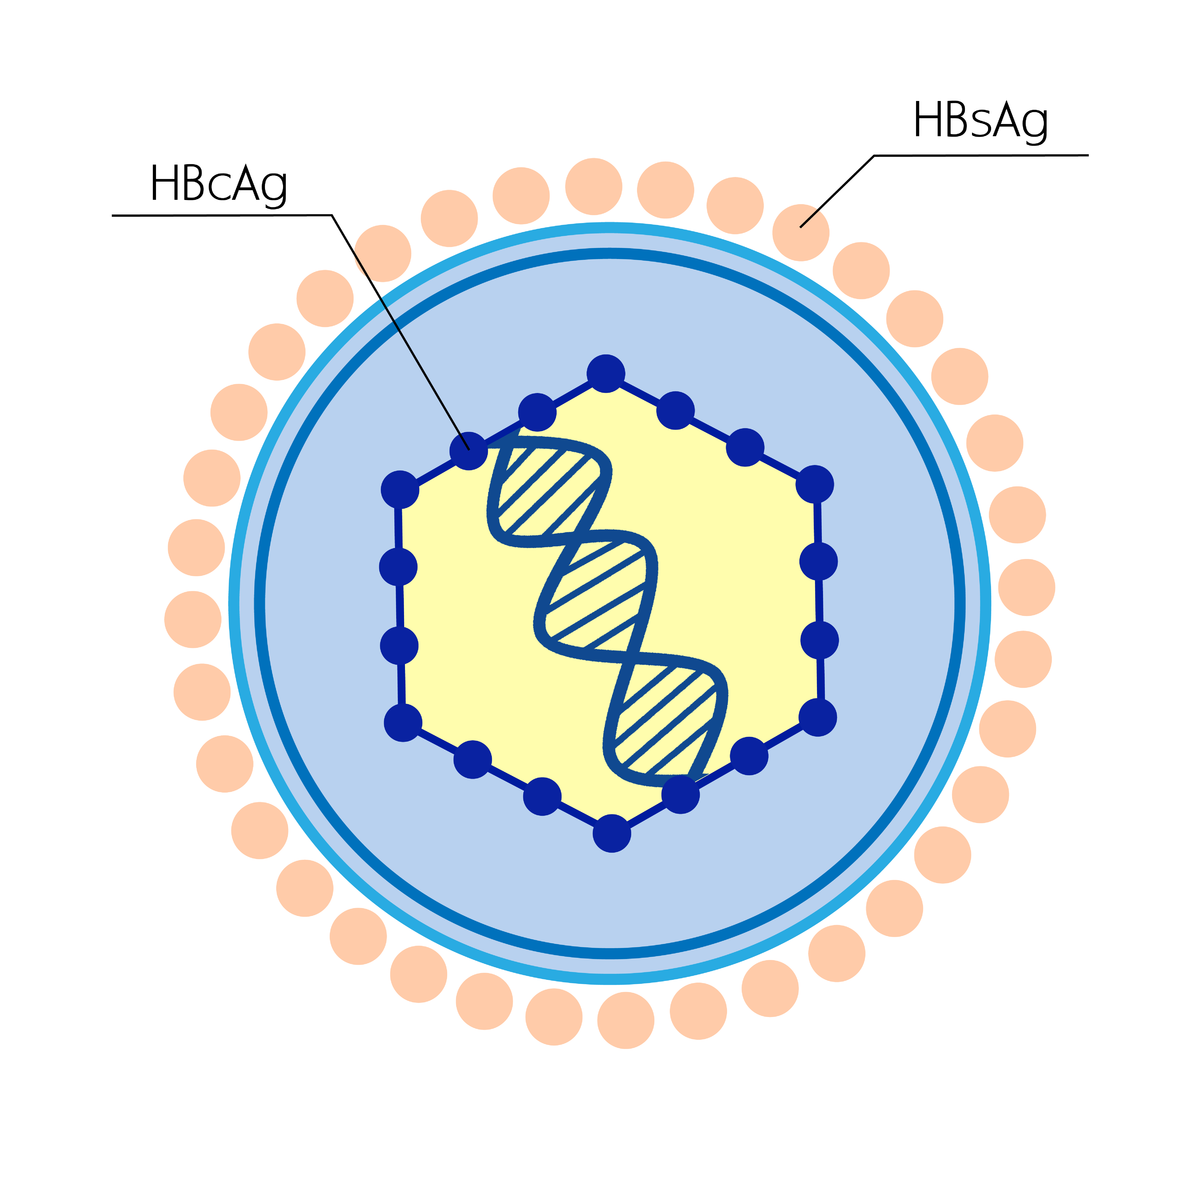 Антиген вируса гепатита в hbsag. HBS антиген гепатита b. Вирус гепатита б HBSAG. Антигенная структура вируса гепатита в (HBV). HBS антиген вируса гепатита в.